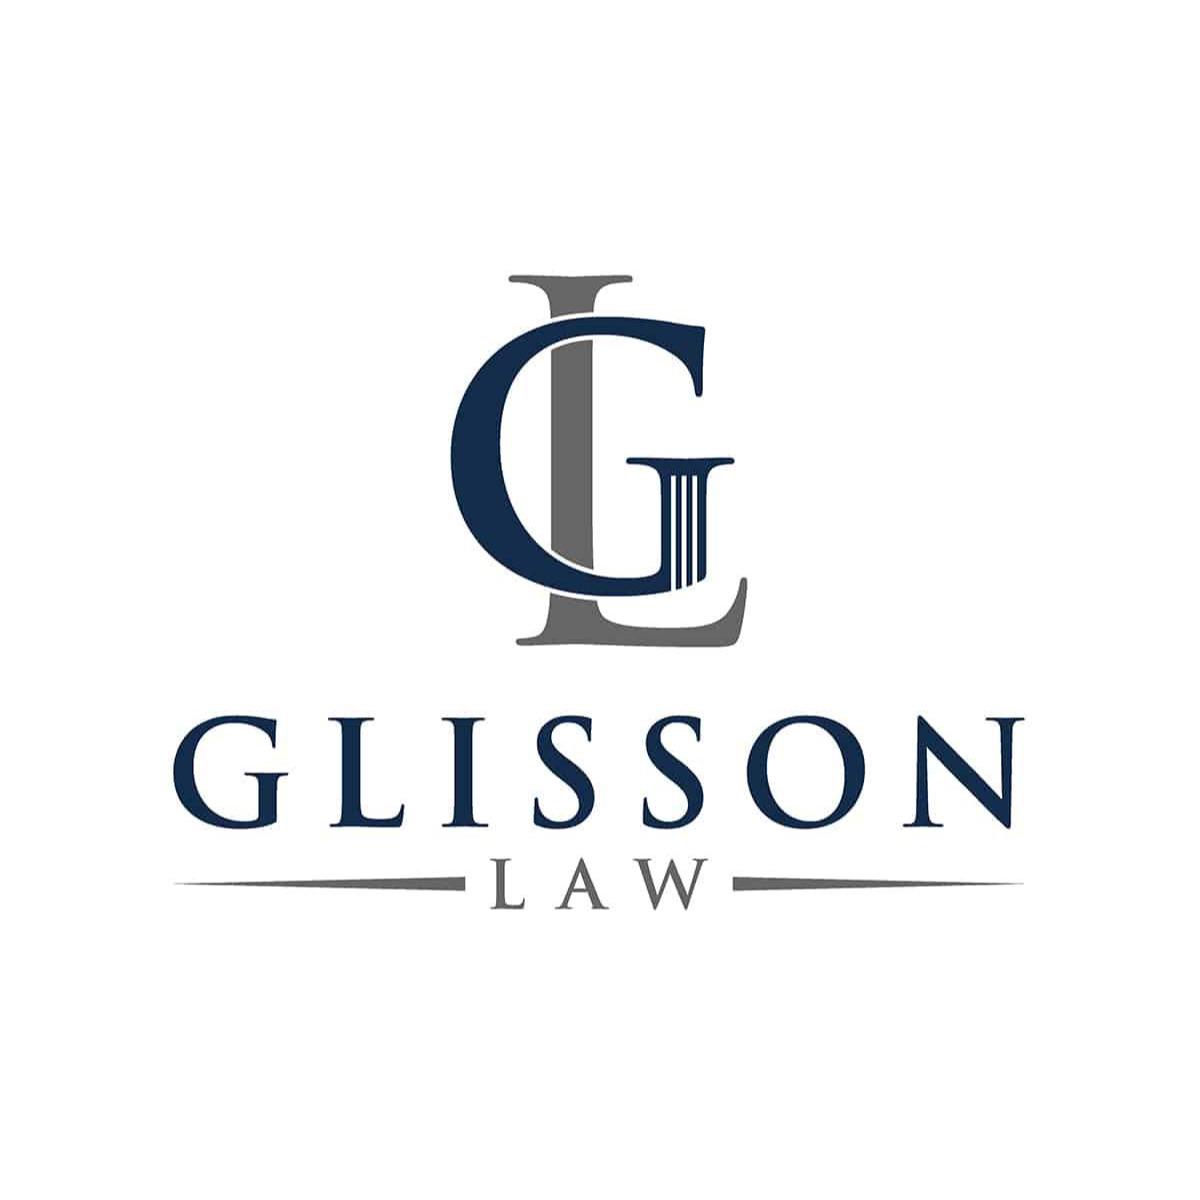 Glisson Law - Alton, IL 62002 - (618)462-1077 | ShowMeLocal.com